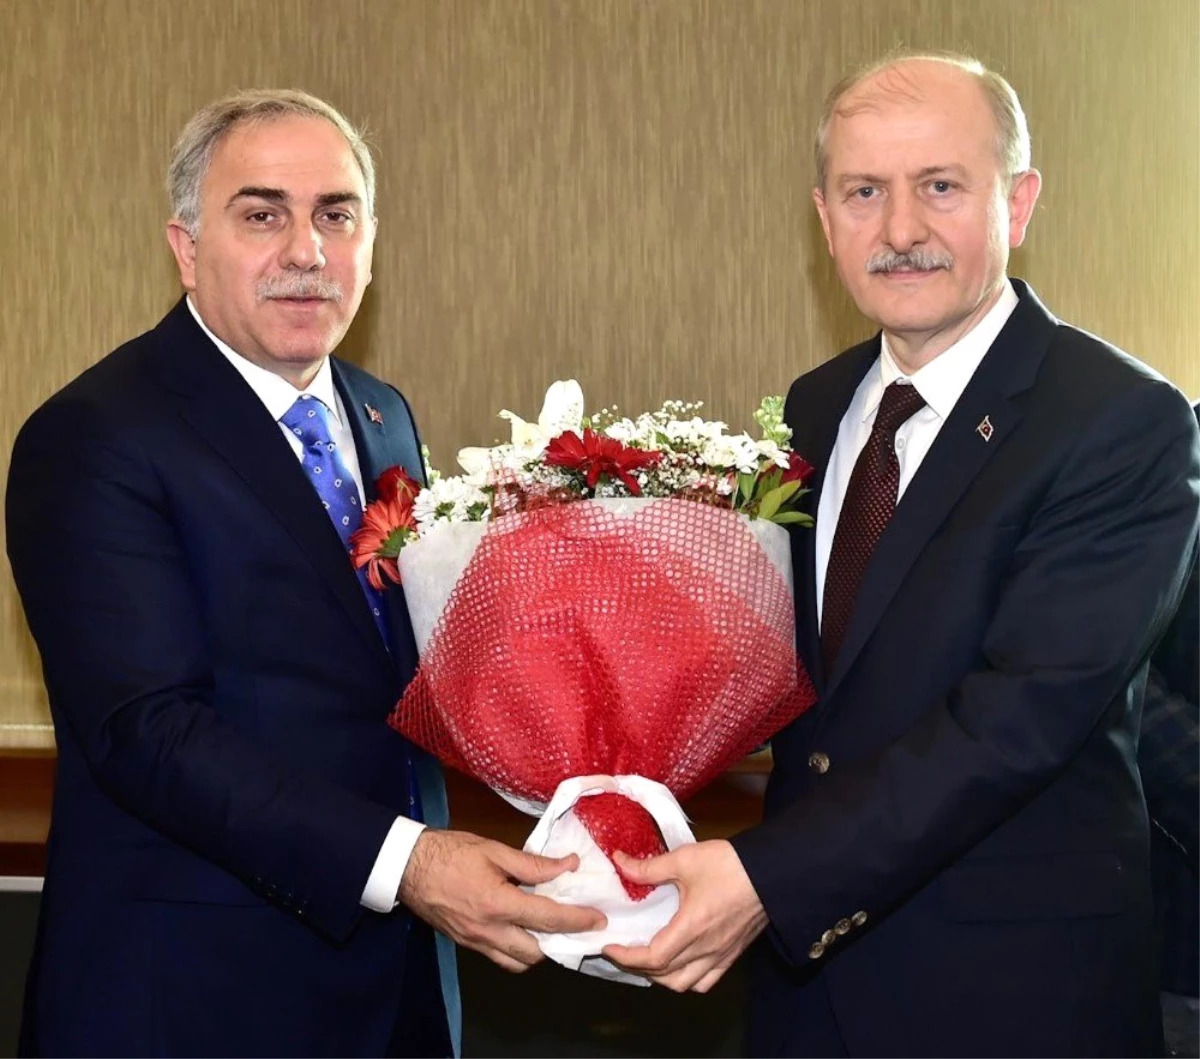 Fatih Belediye Başkanı Seçilen Mehmet Ergün Turan, Görevi Devraldı